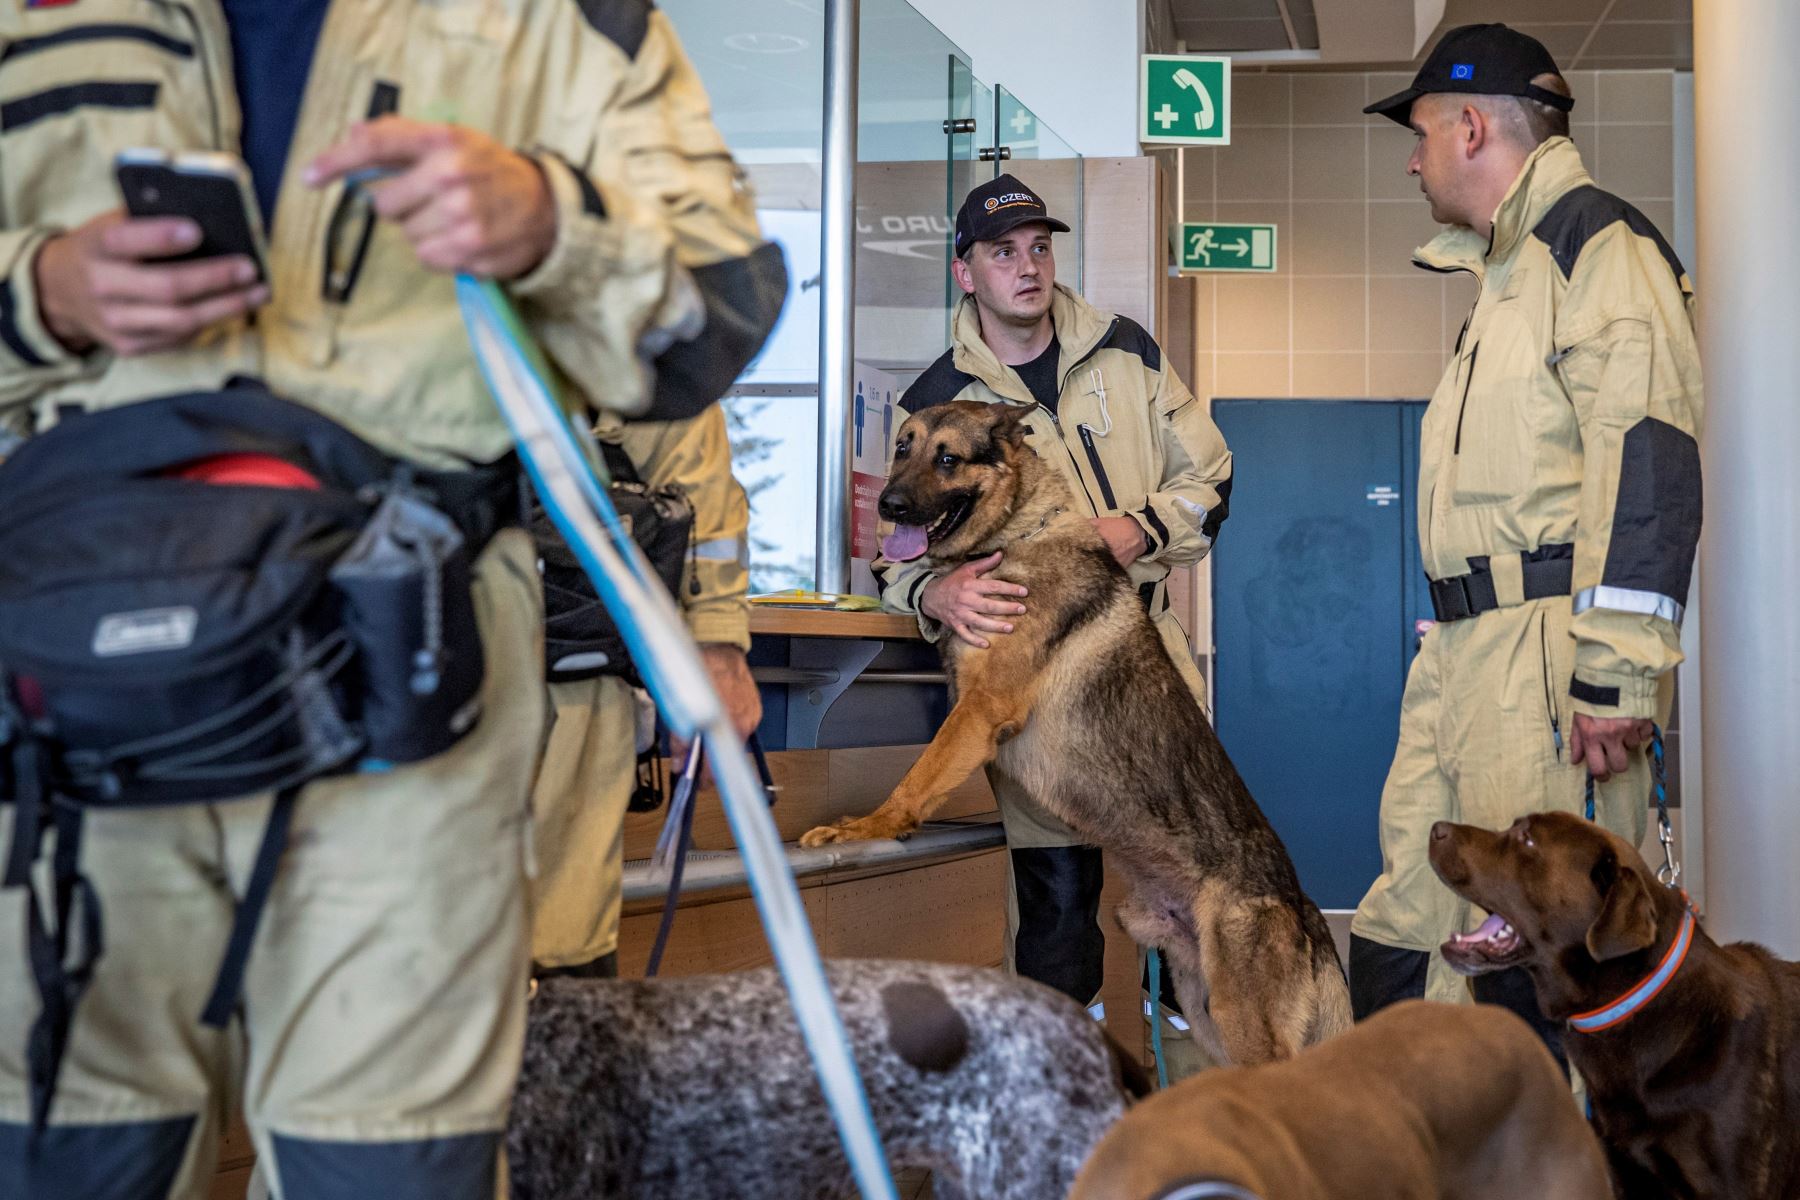 Personal de búsqueda y rescate urbano (USAR) de la República Checa viaja a  Beirut con 37 expertos en búsqueda y 5 perros para apoyar a en los rescates en Beirut tras la explosión que devastó nación de Oriente Medio.
Foto: EFE